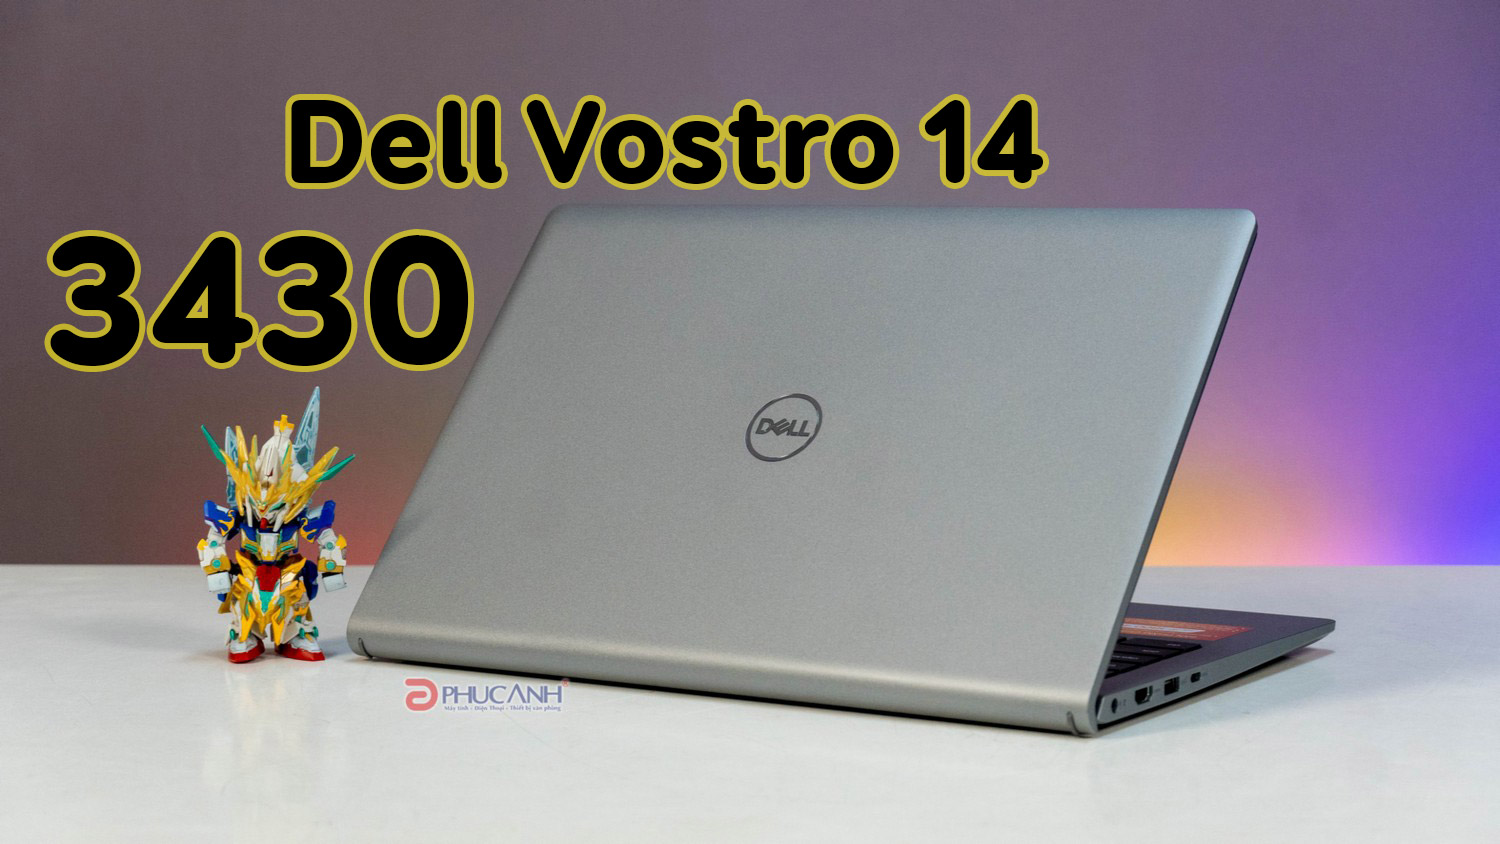 Đánh giá laptop Dell Vostro 3430 - thiết kế nhỏ gọn, hiệu năng vượt trội từ CPU Intel Raptor Lake